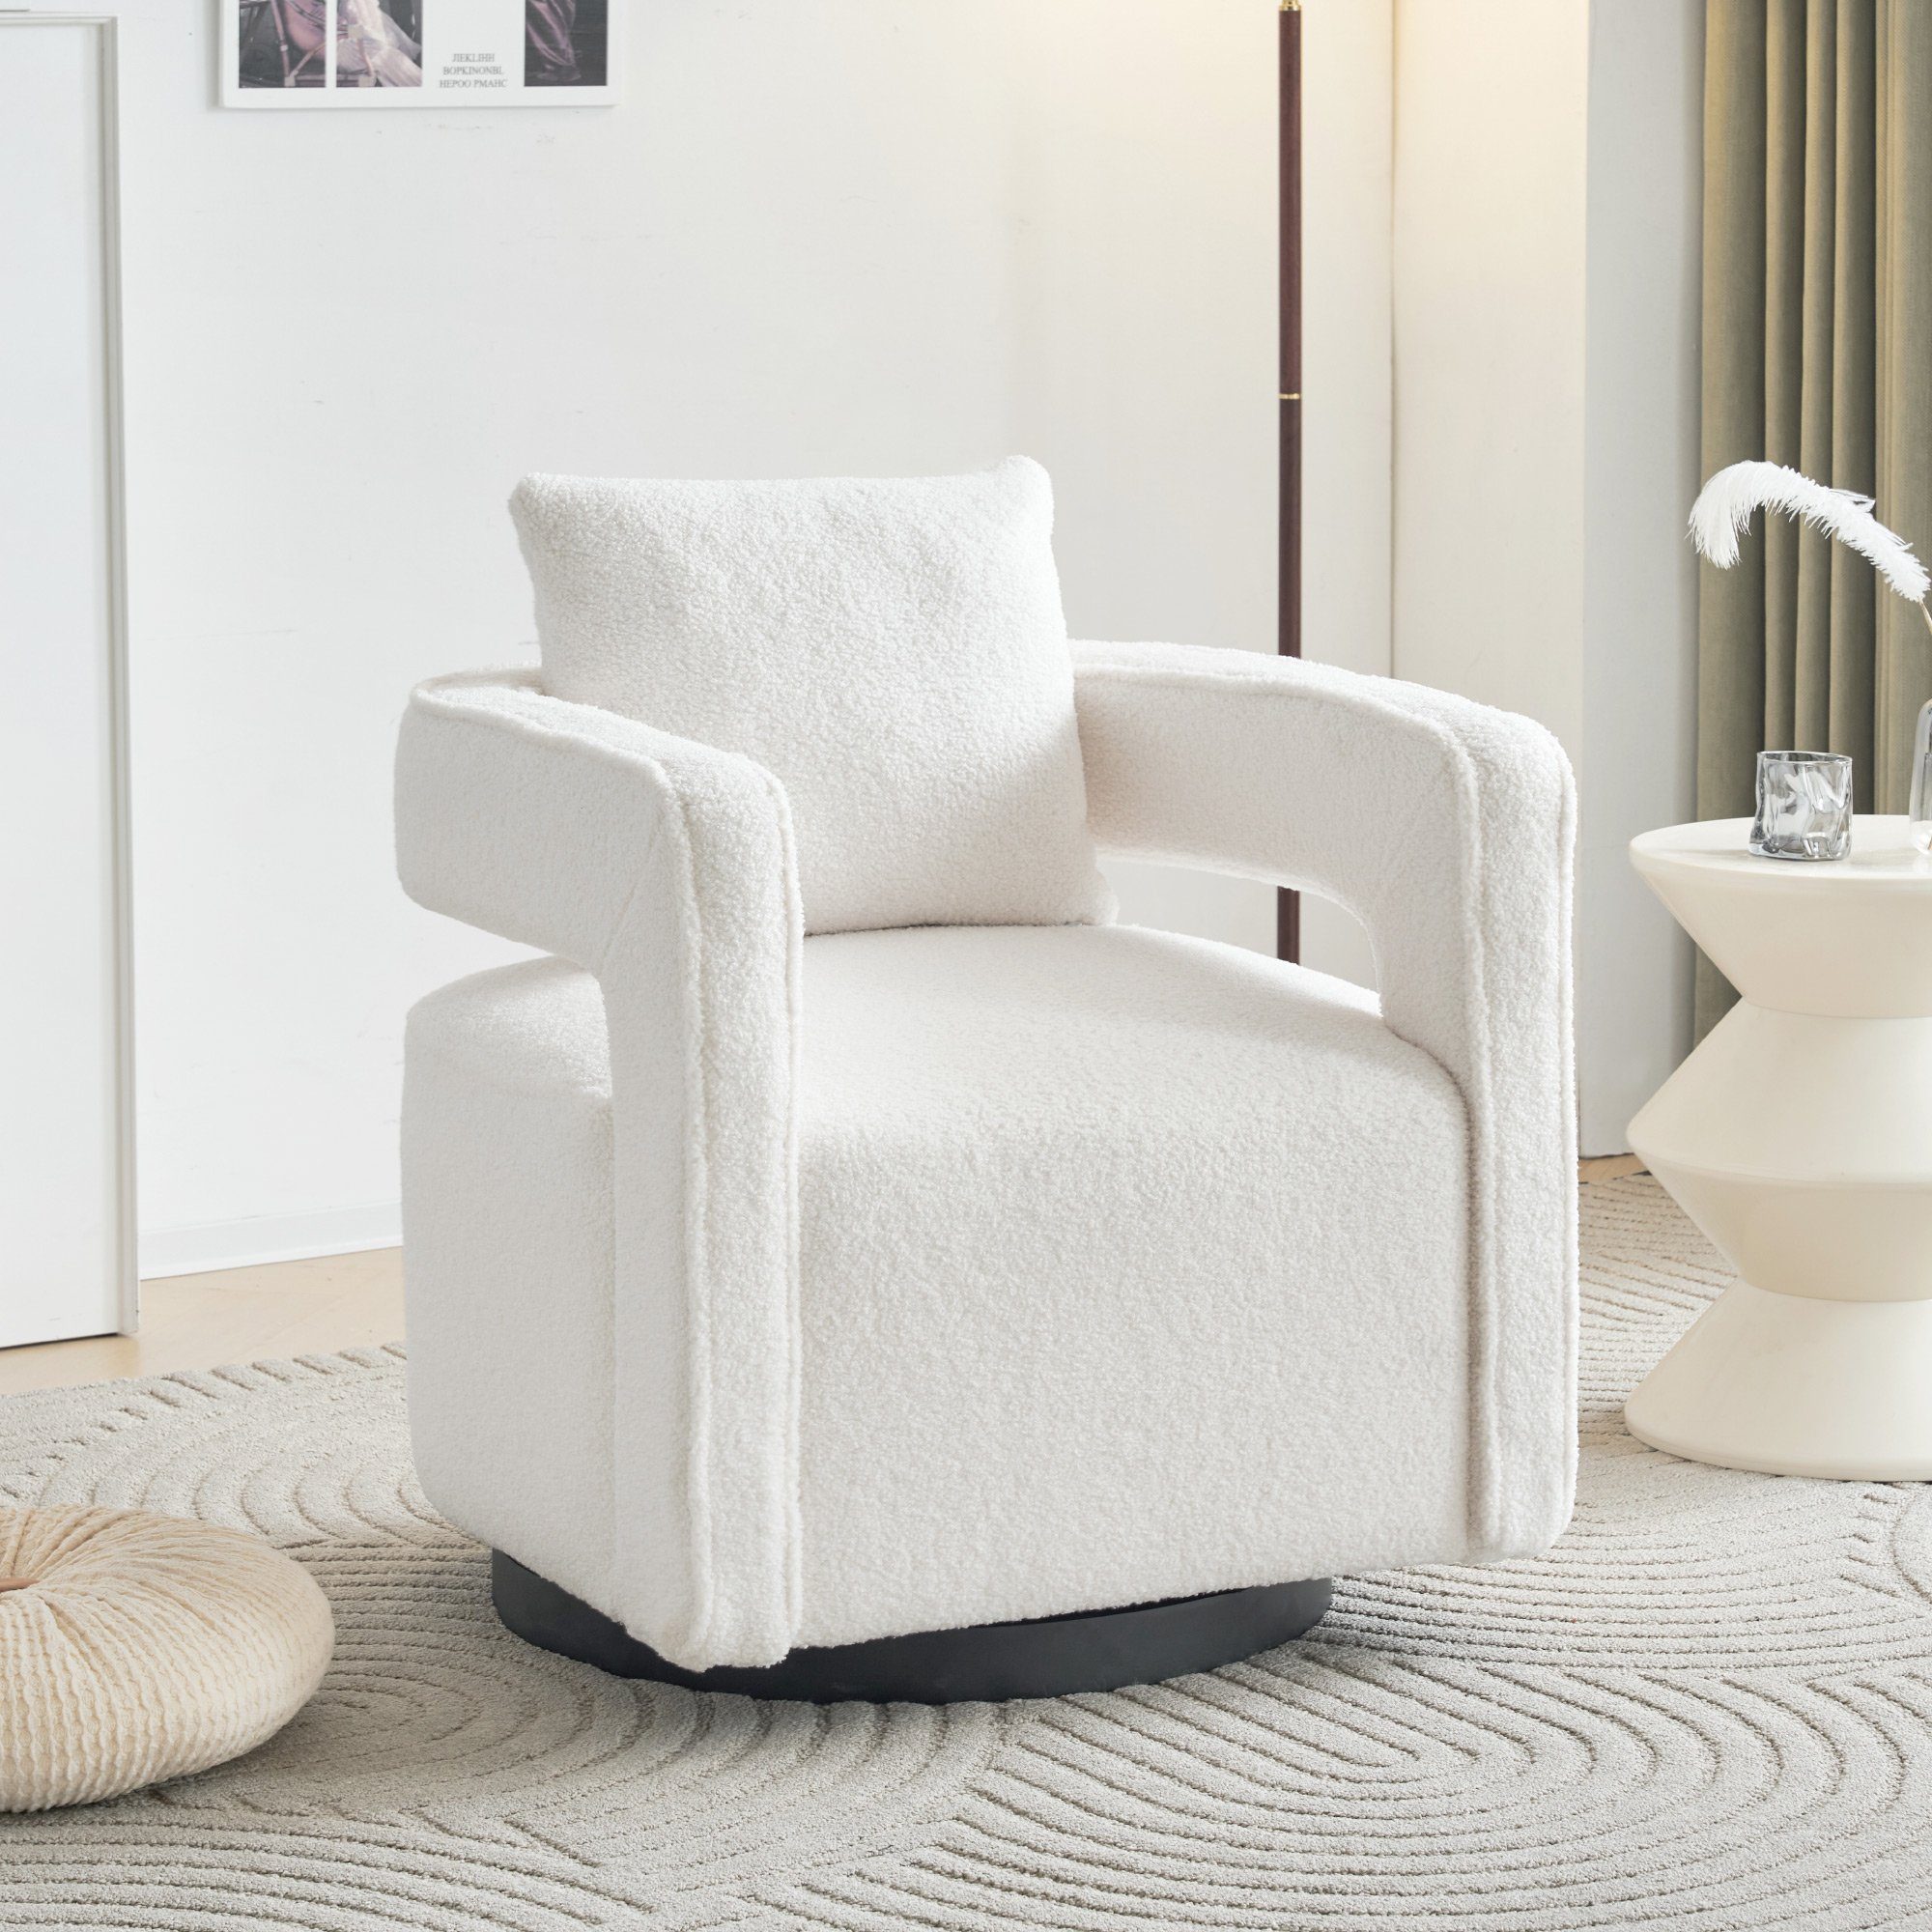 KLAM HOME Relaxsessel Drehsessel Polsterstuhl Einzelsofasessel (Freizeitstuhl mit Armlehnen), 360° drehbar TV-Sessel mit Kissen, für Wohn-, Schlaf- und Arbeitszimmer weiß